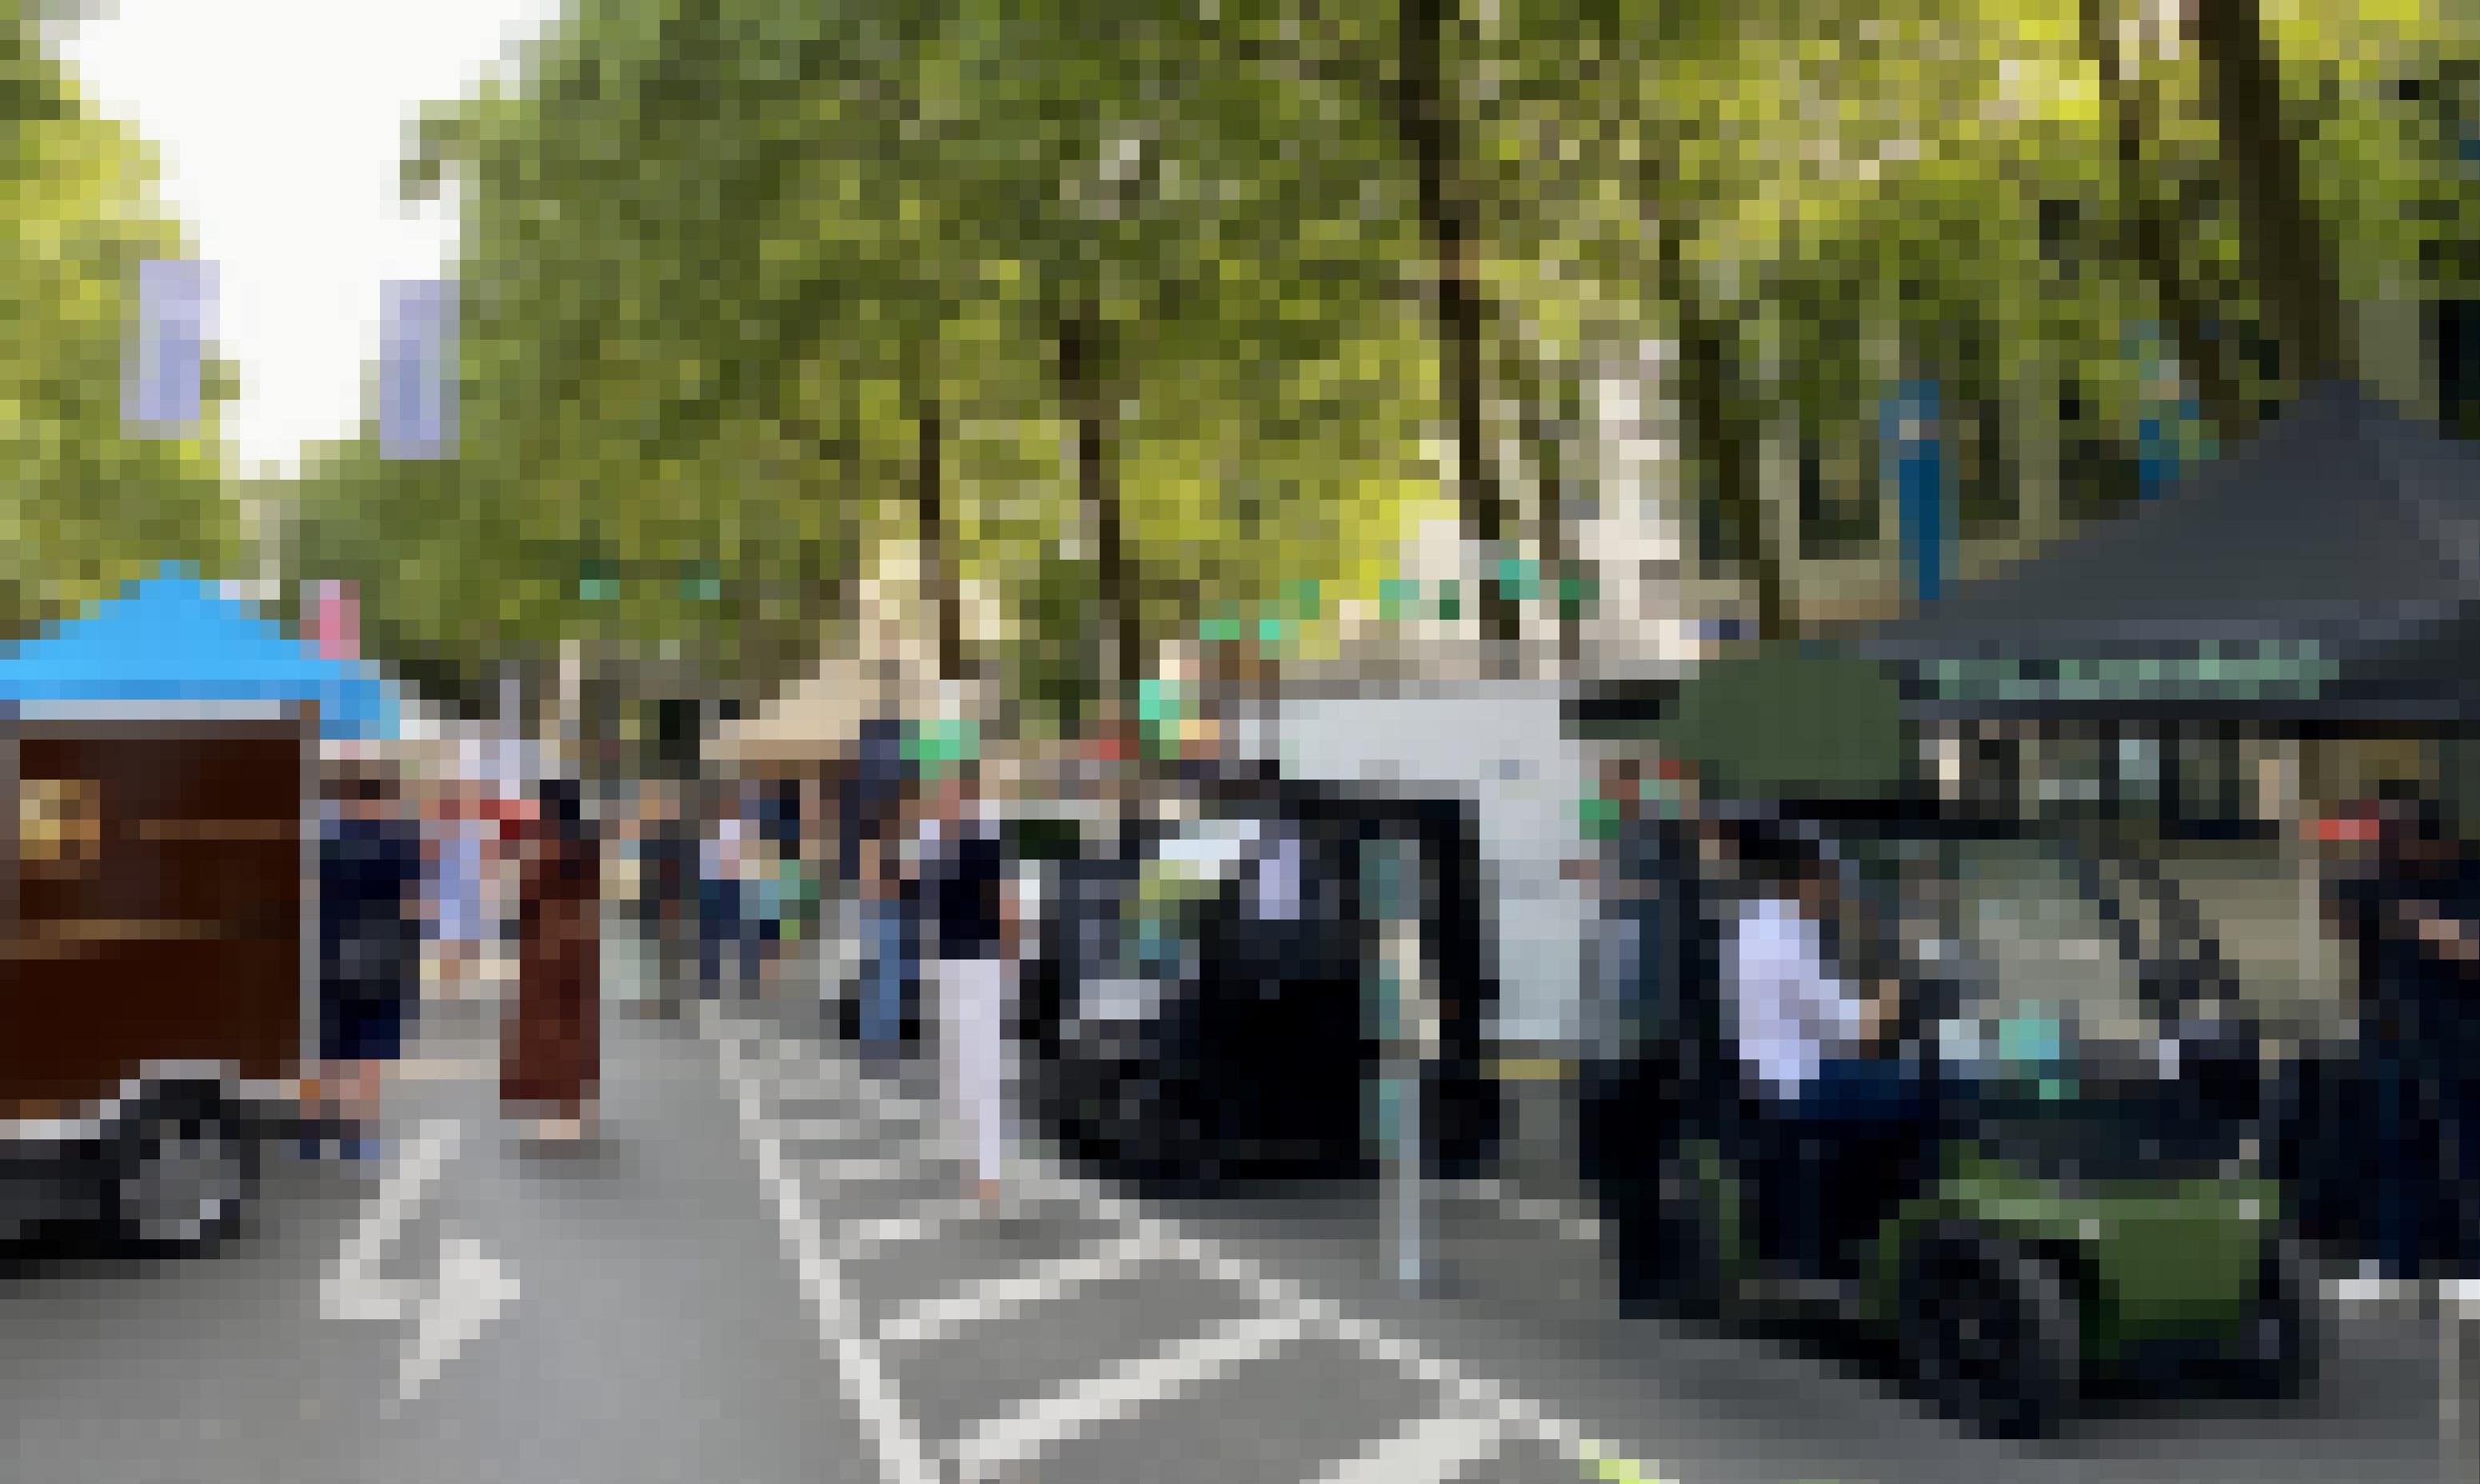 Während einer Messe stehen verschiedene kleine Elektrofahrzeuge in einer Reihe auf einer Straße